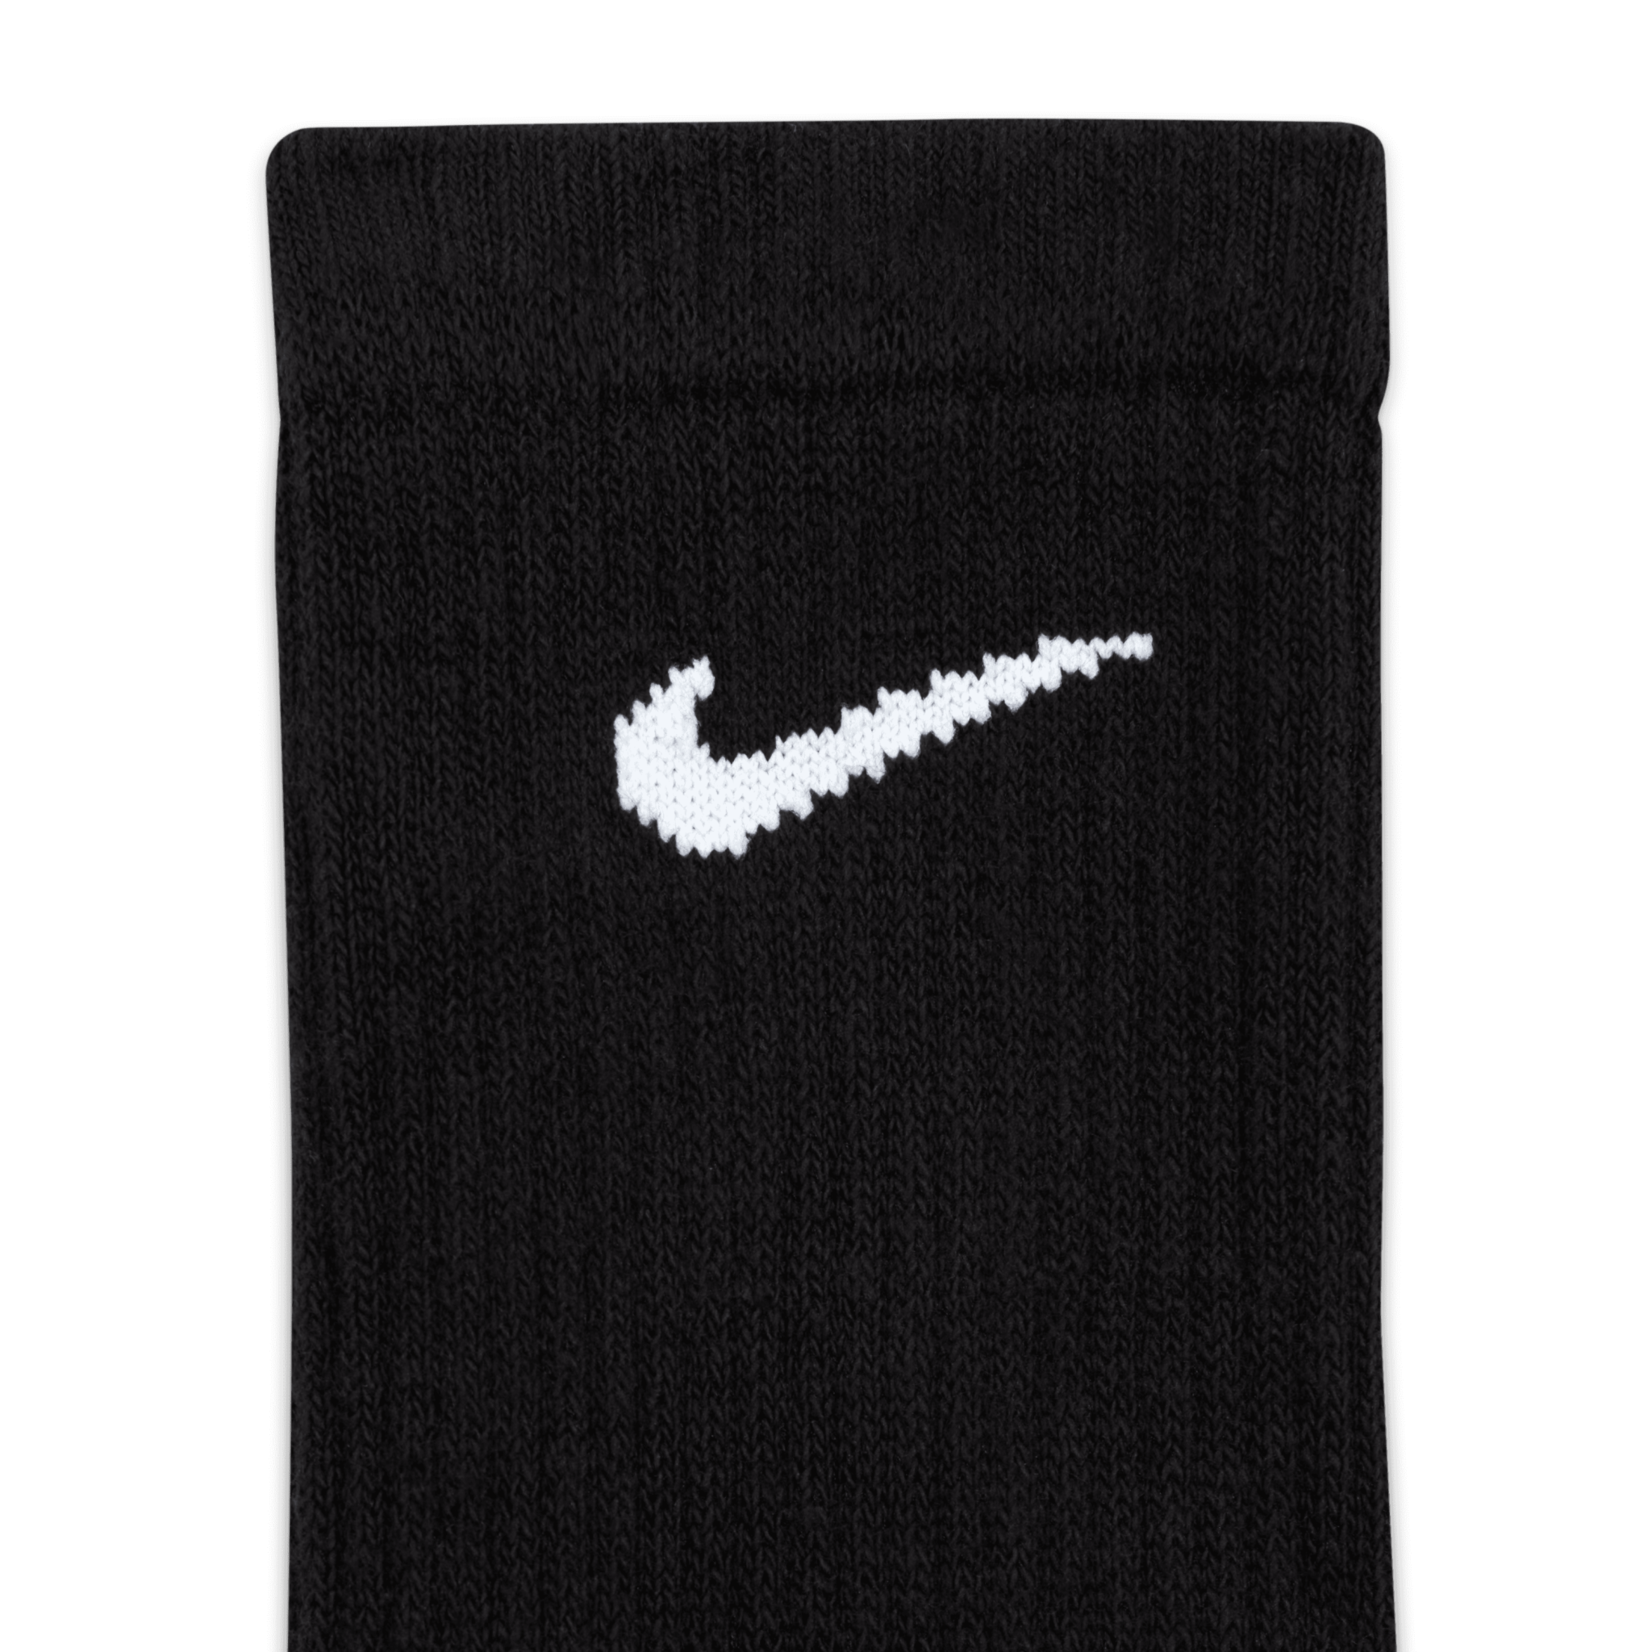 Nike Nike Everyday Plus Cushioned Training Crew Socks (3 Pairs) Black/White